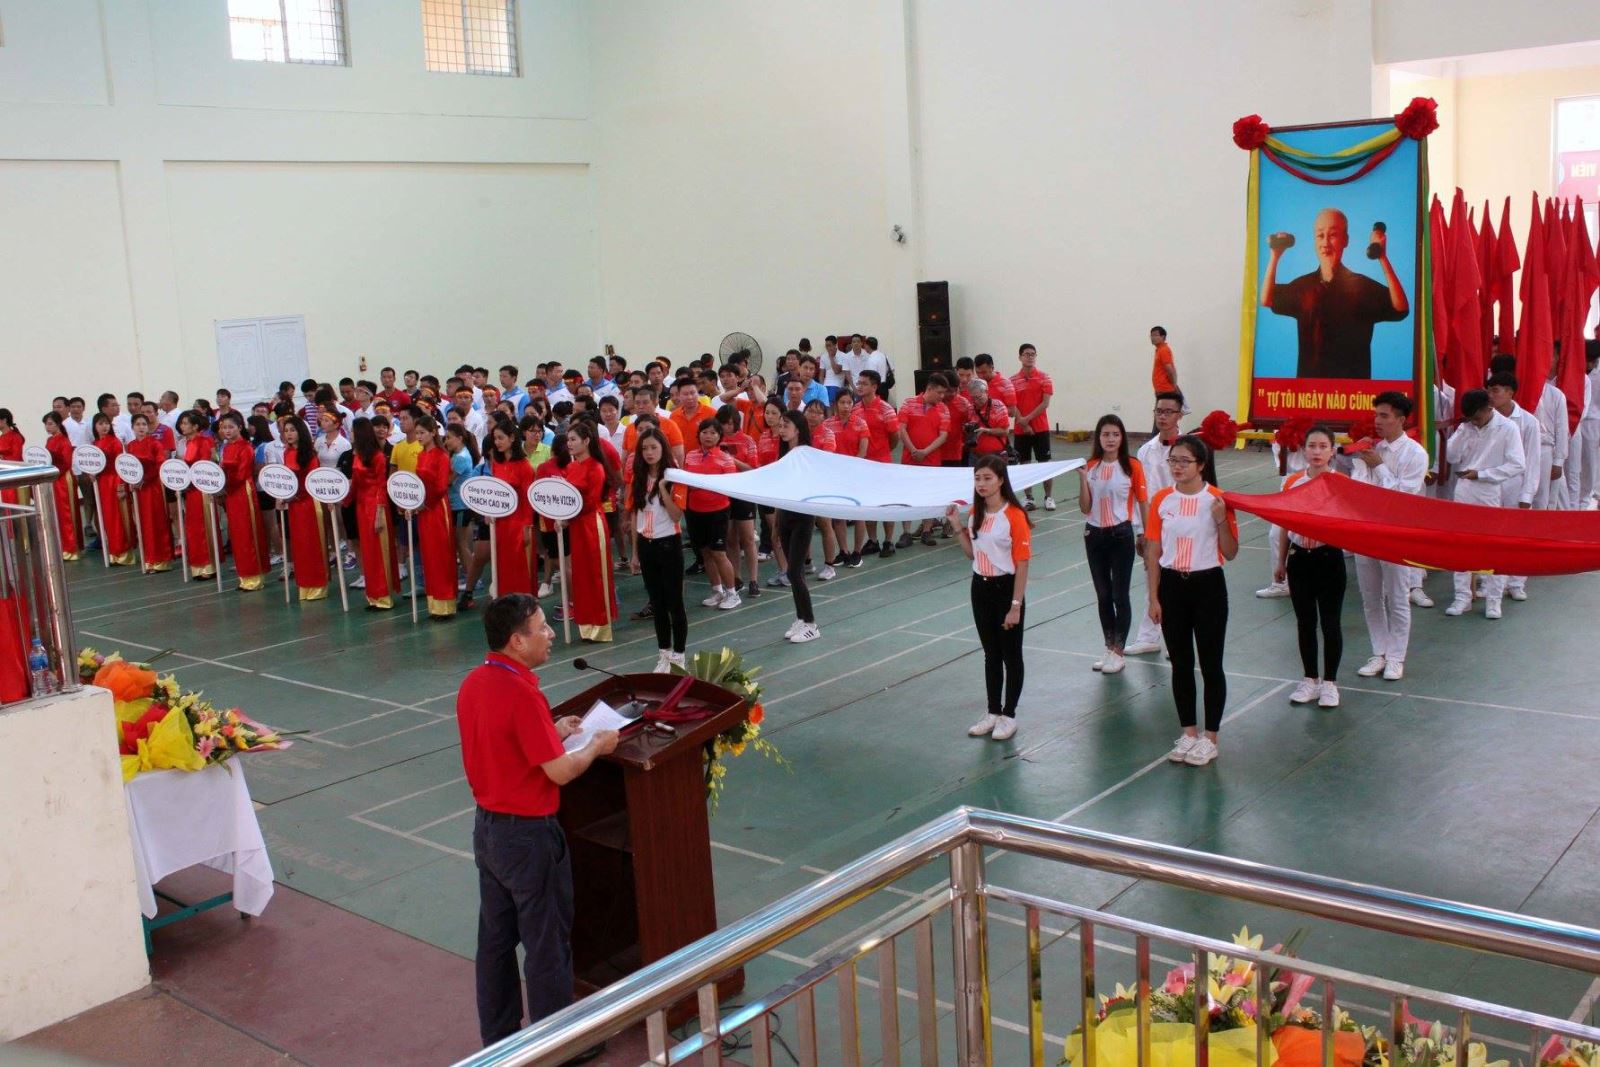 Tổng công ty Công nghiệp Xi măng Việt Nam (VICEM) tổ chức Hội thao chào mừng Đại hội XII Công đoàn Việt Nam 2018